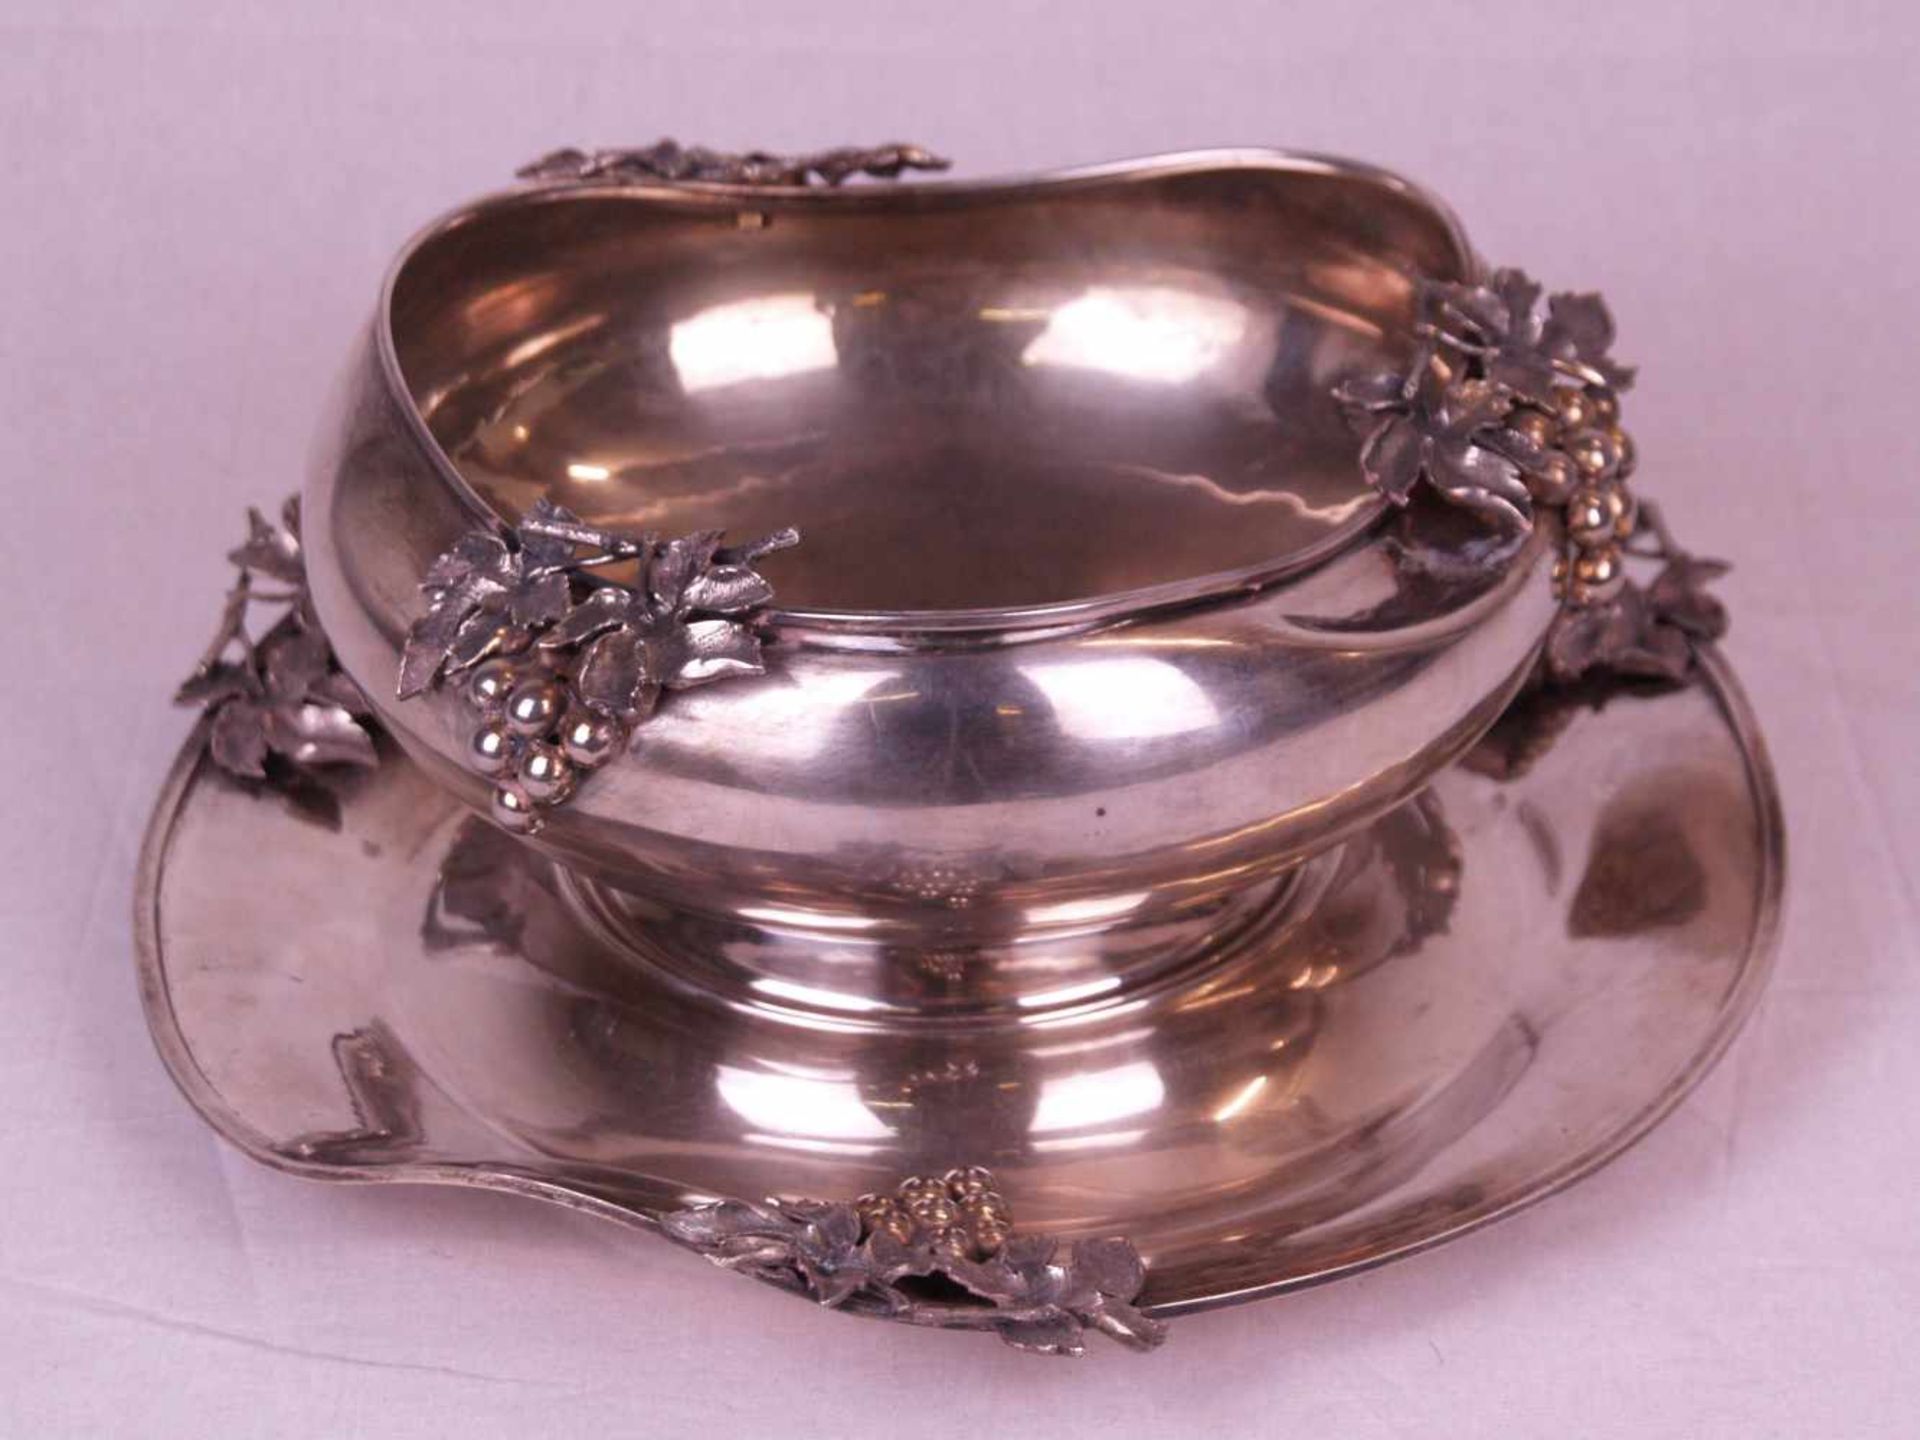 Obstschale mit Presentoir - 900er Silber,gepunzt,2-tlg,runde unregelmäßige Form mit gewelltem Rand,